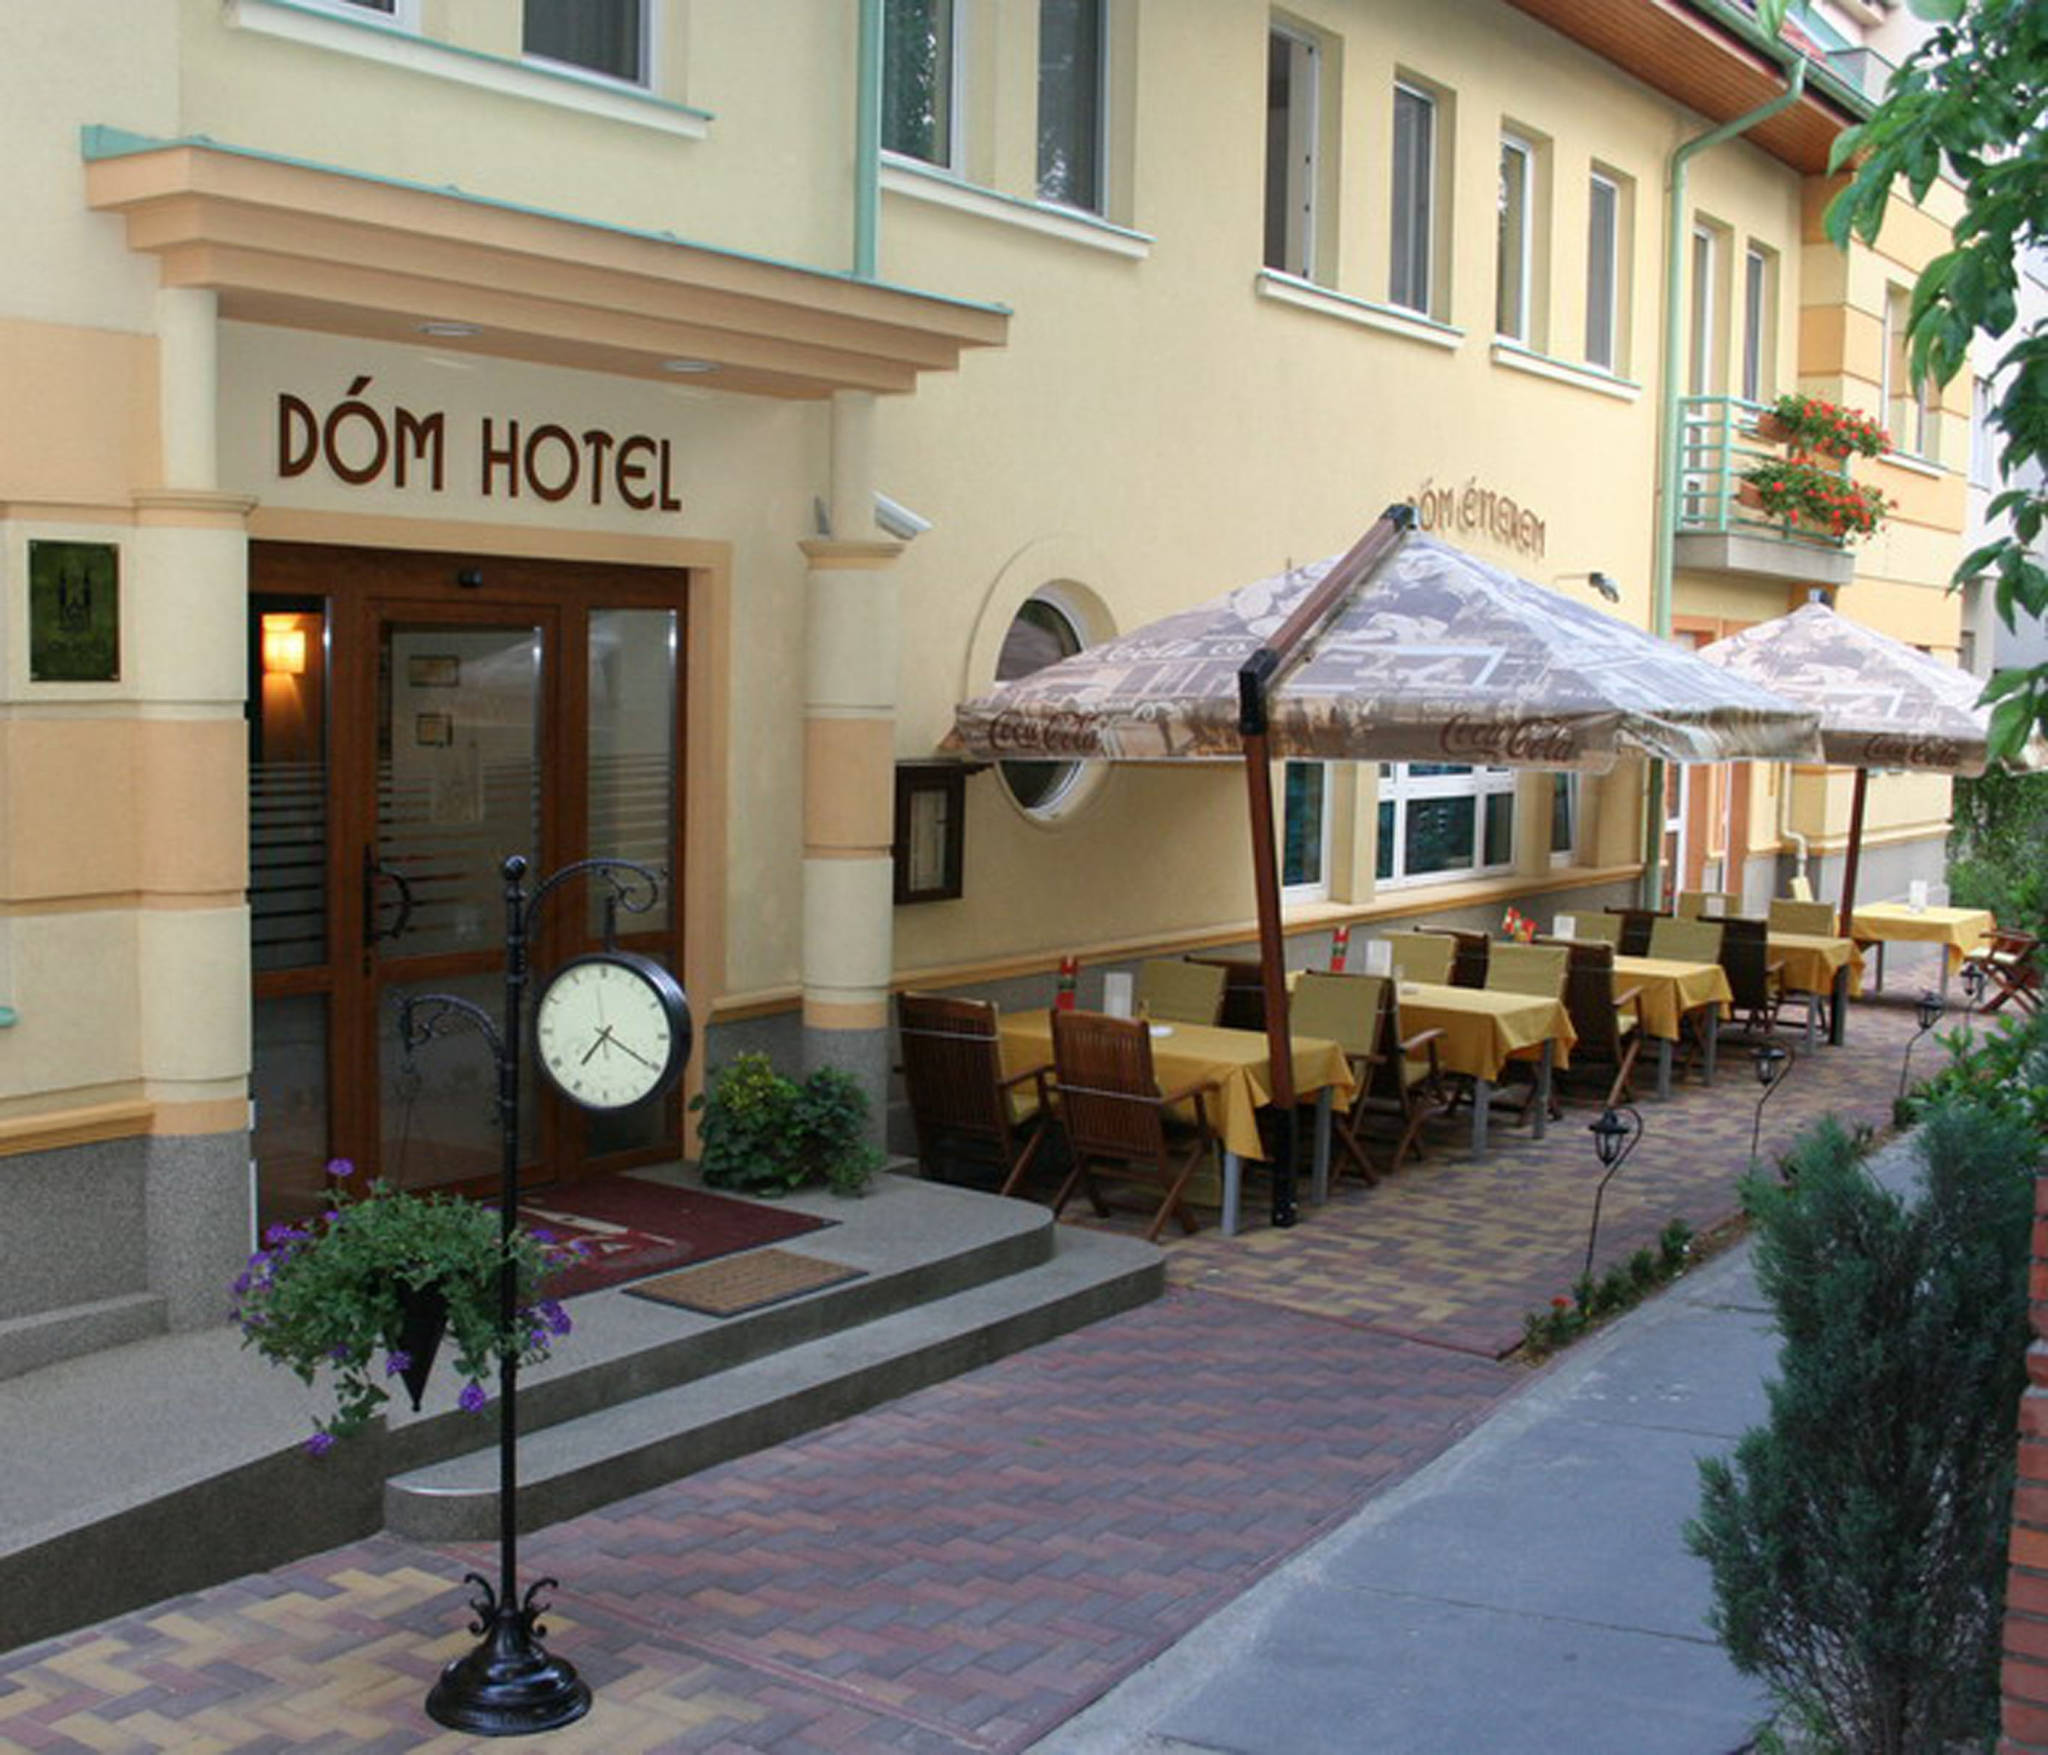 Dóm Hotel Szeged - Szallas.hu